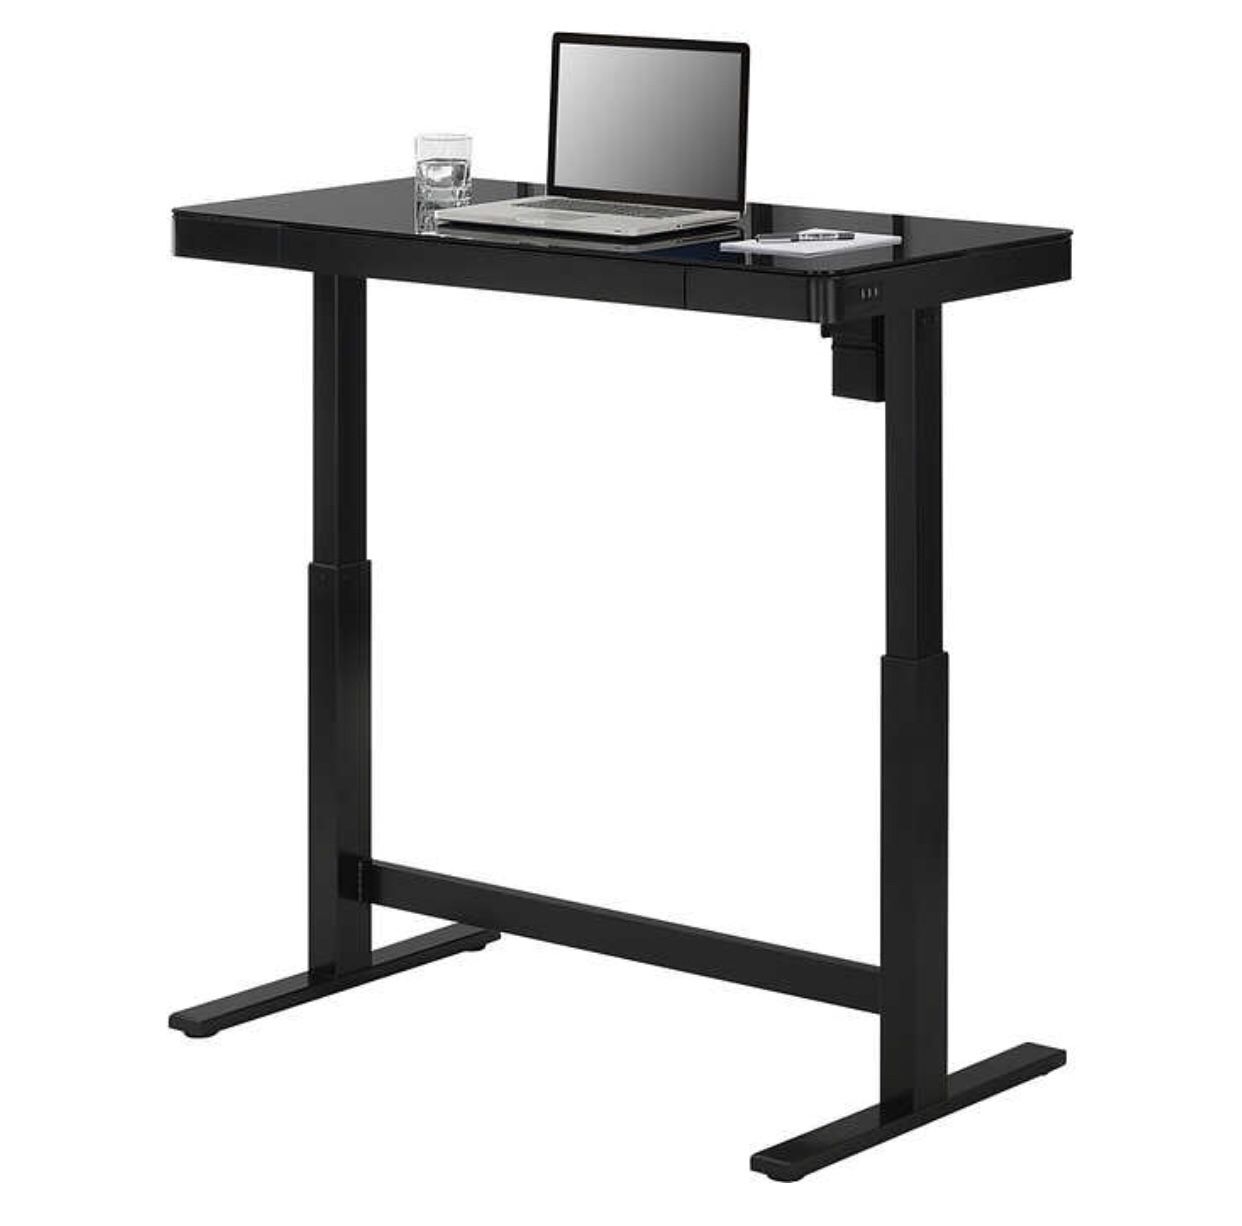 Tresanti Adjustable Height Desk Dimensions: 47"L x 25"W x 29.4" to 47"H